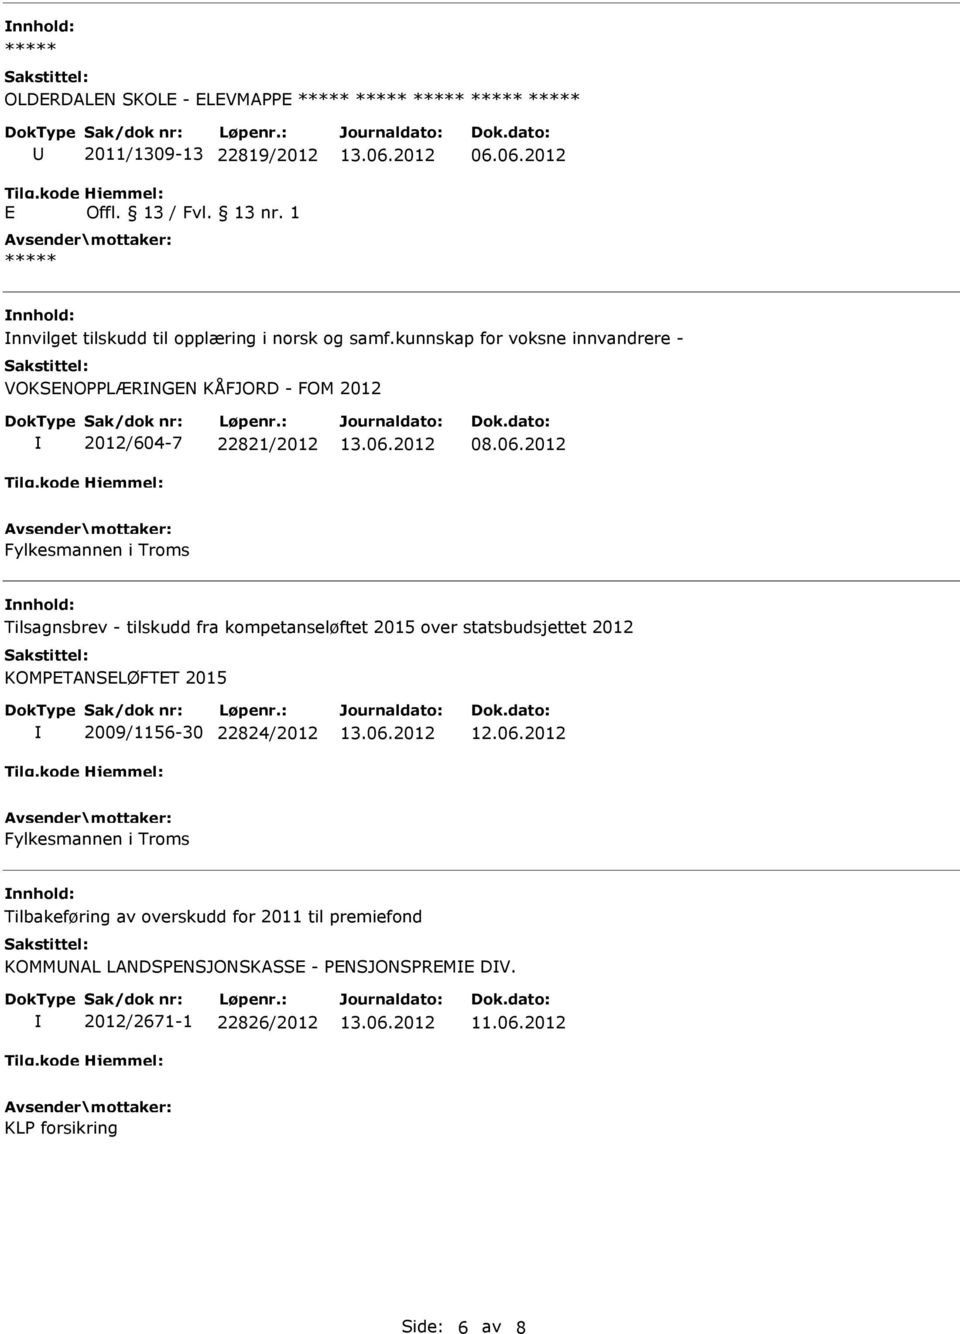 2012 Fylkesmannen i Troms Tilsagnsbrev - tilskudd fra kompetanseløftet 2015 over statsbudsjettet 2012 KOMPETANSELØFTET 2015 2009/1156-30